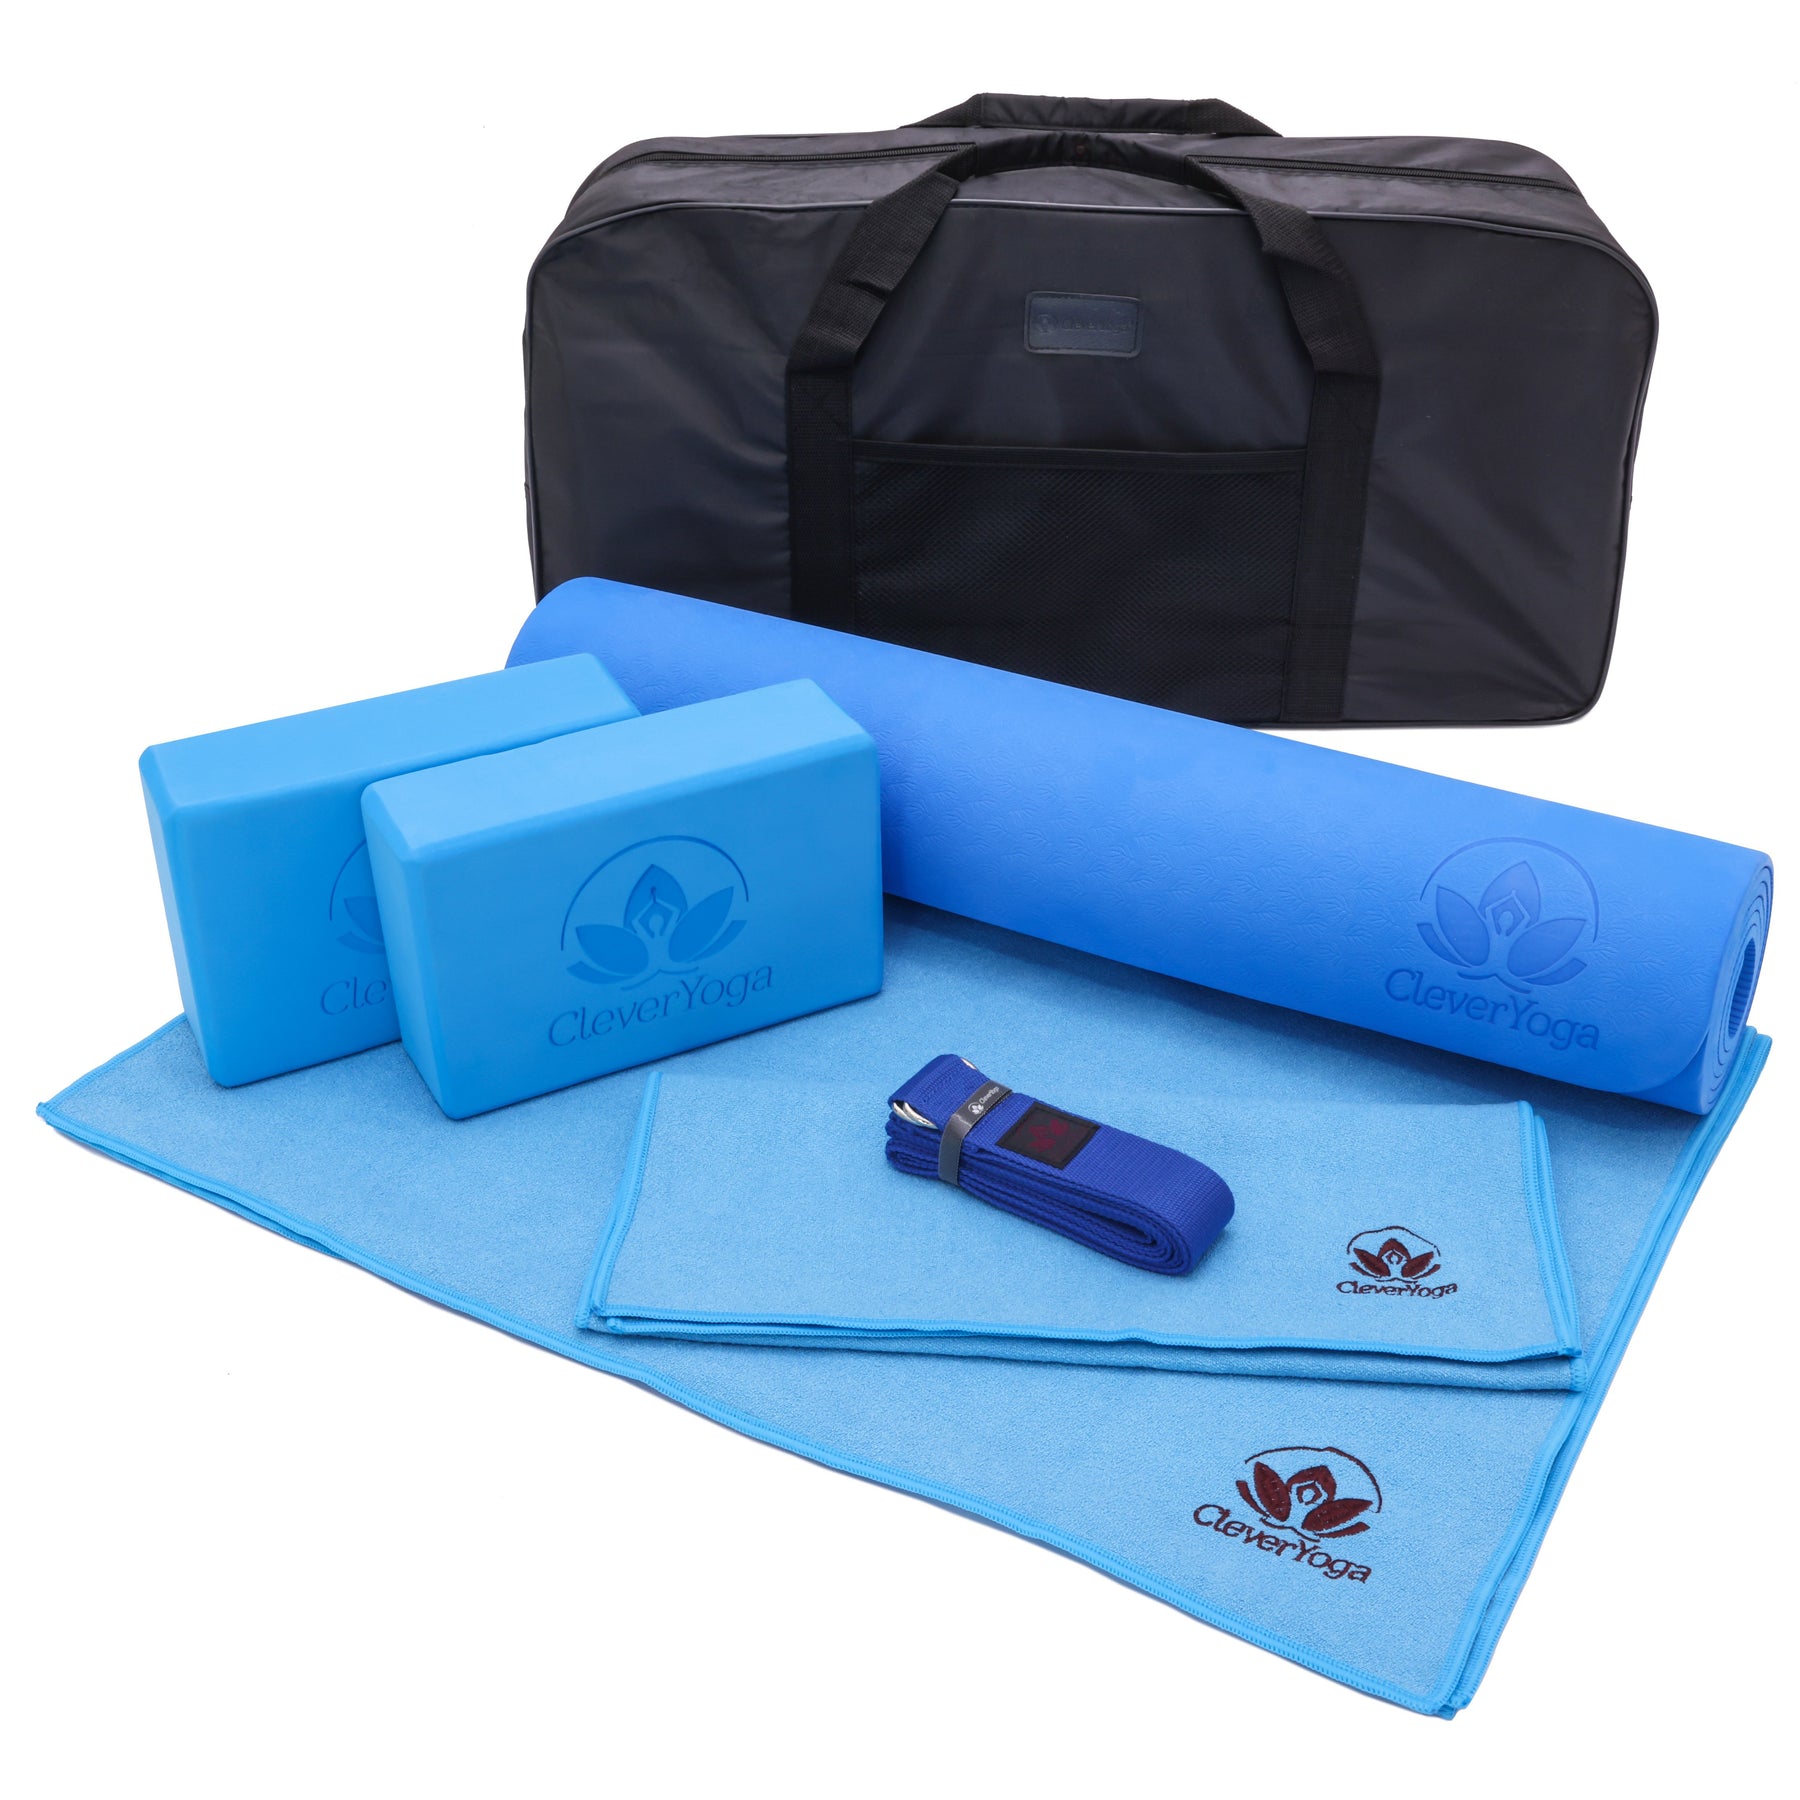 Yoga Kit Mat, Blocks, Strap, Towels, Carrying Bag - 70% Off